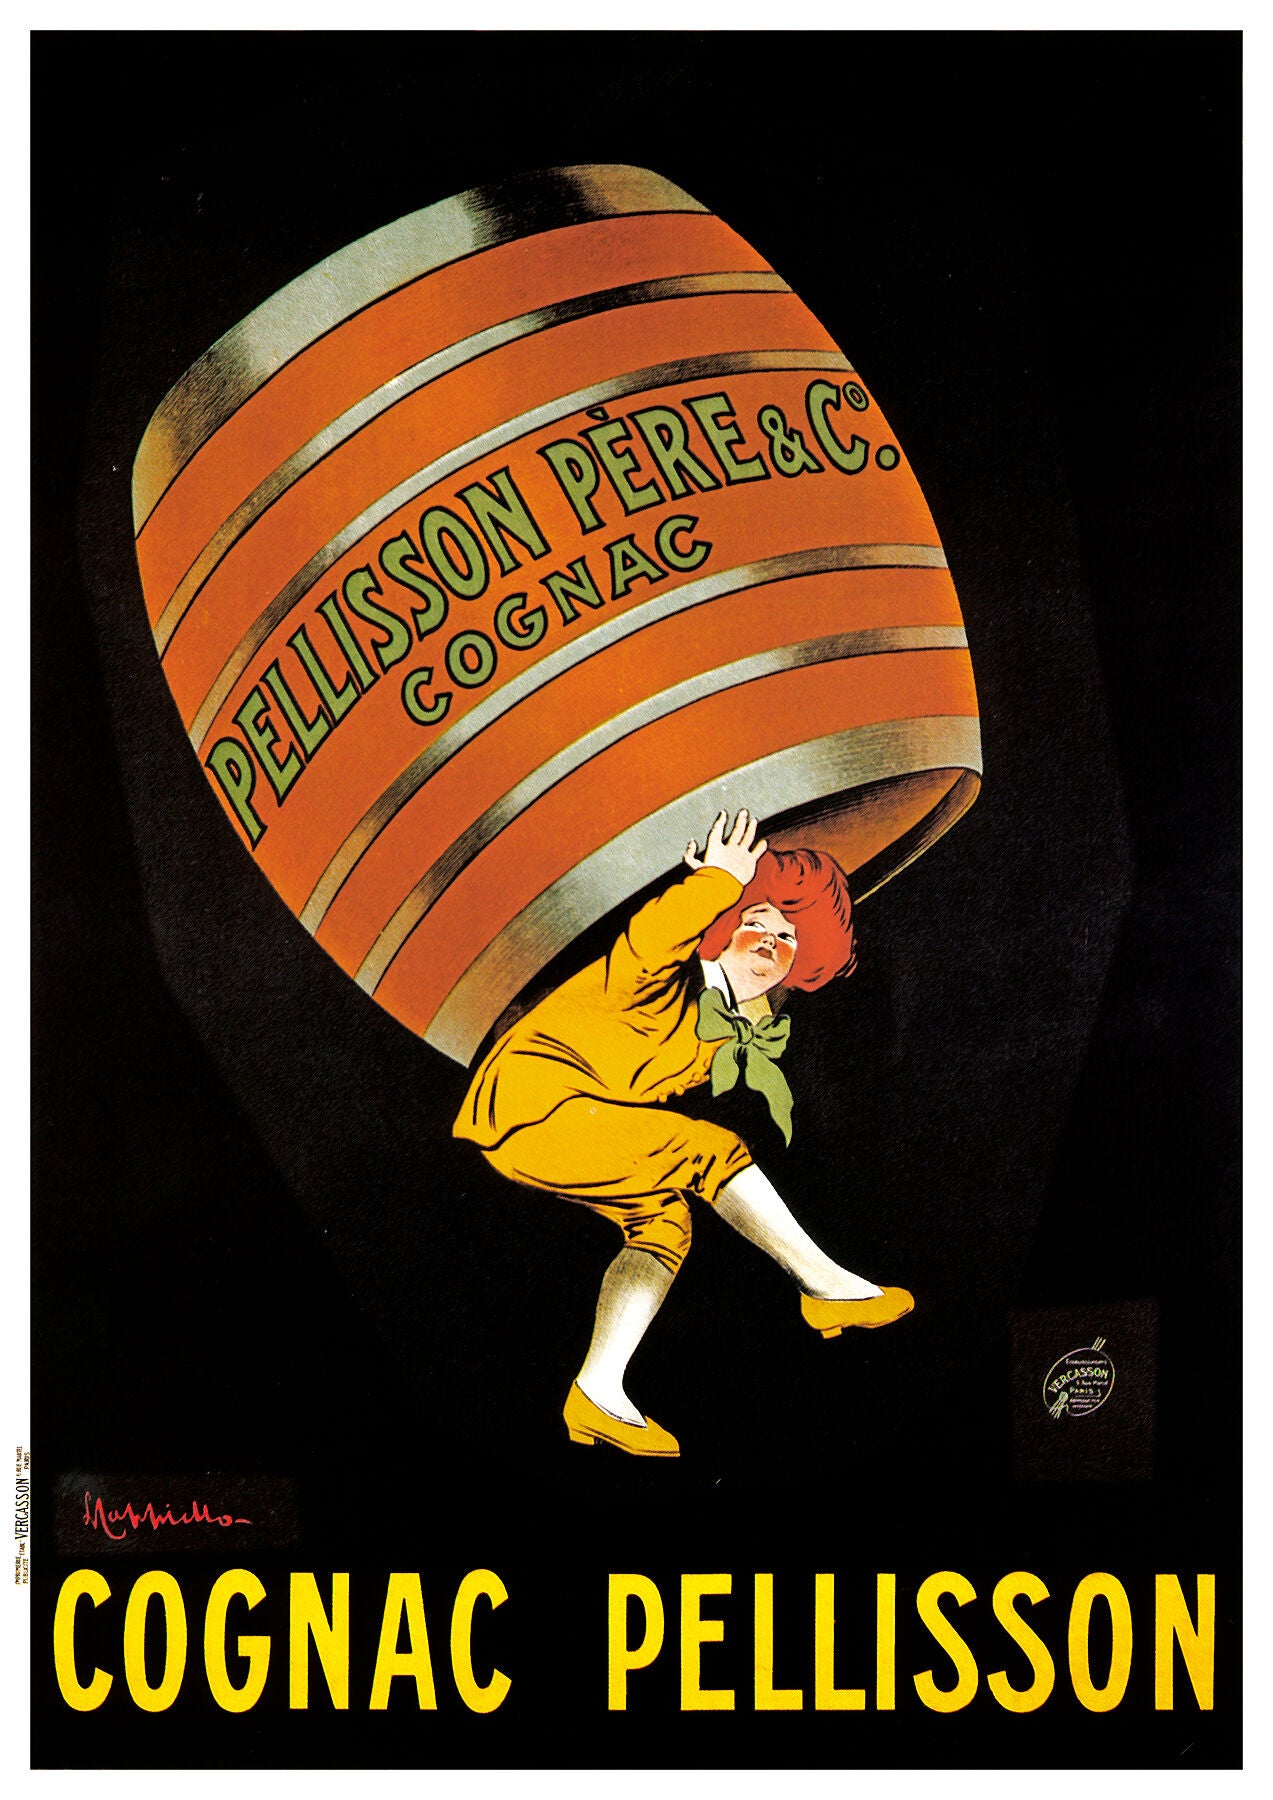 Cognac Pellisson poster by Leonetto Cappiello